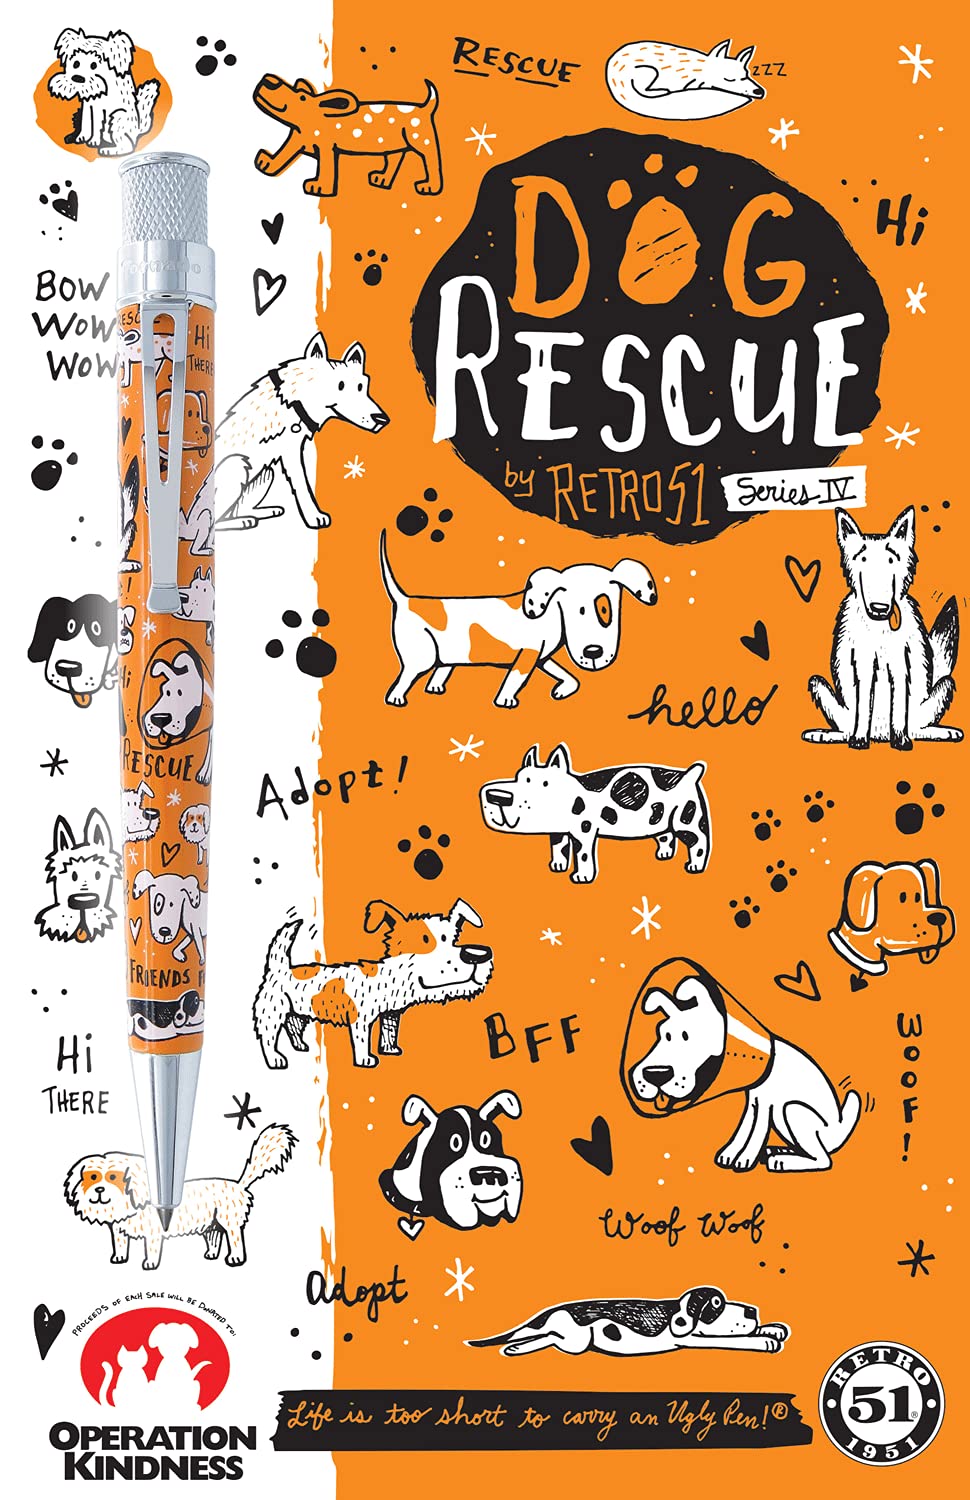 Retro 51 Dog Rescue Series IV Ballpoint Pen